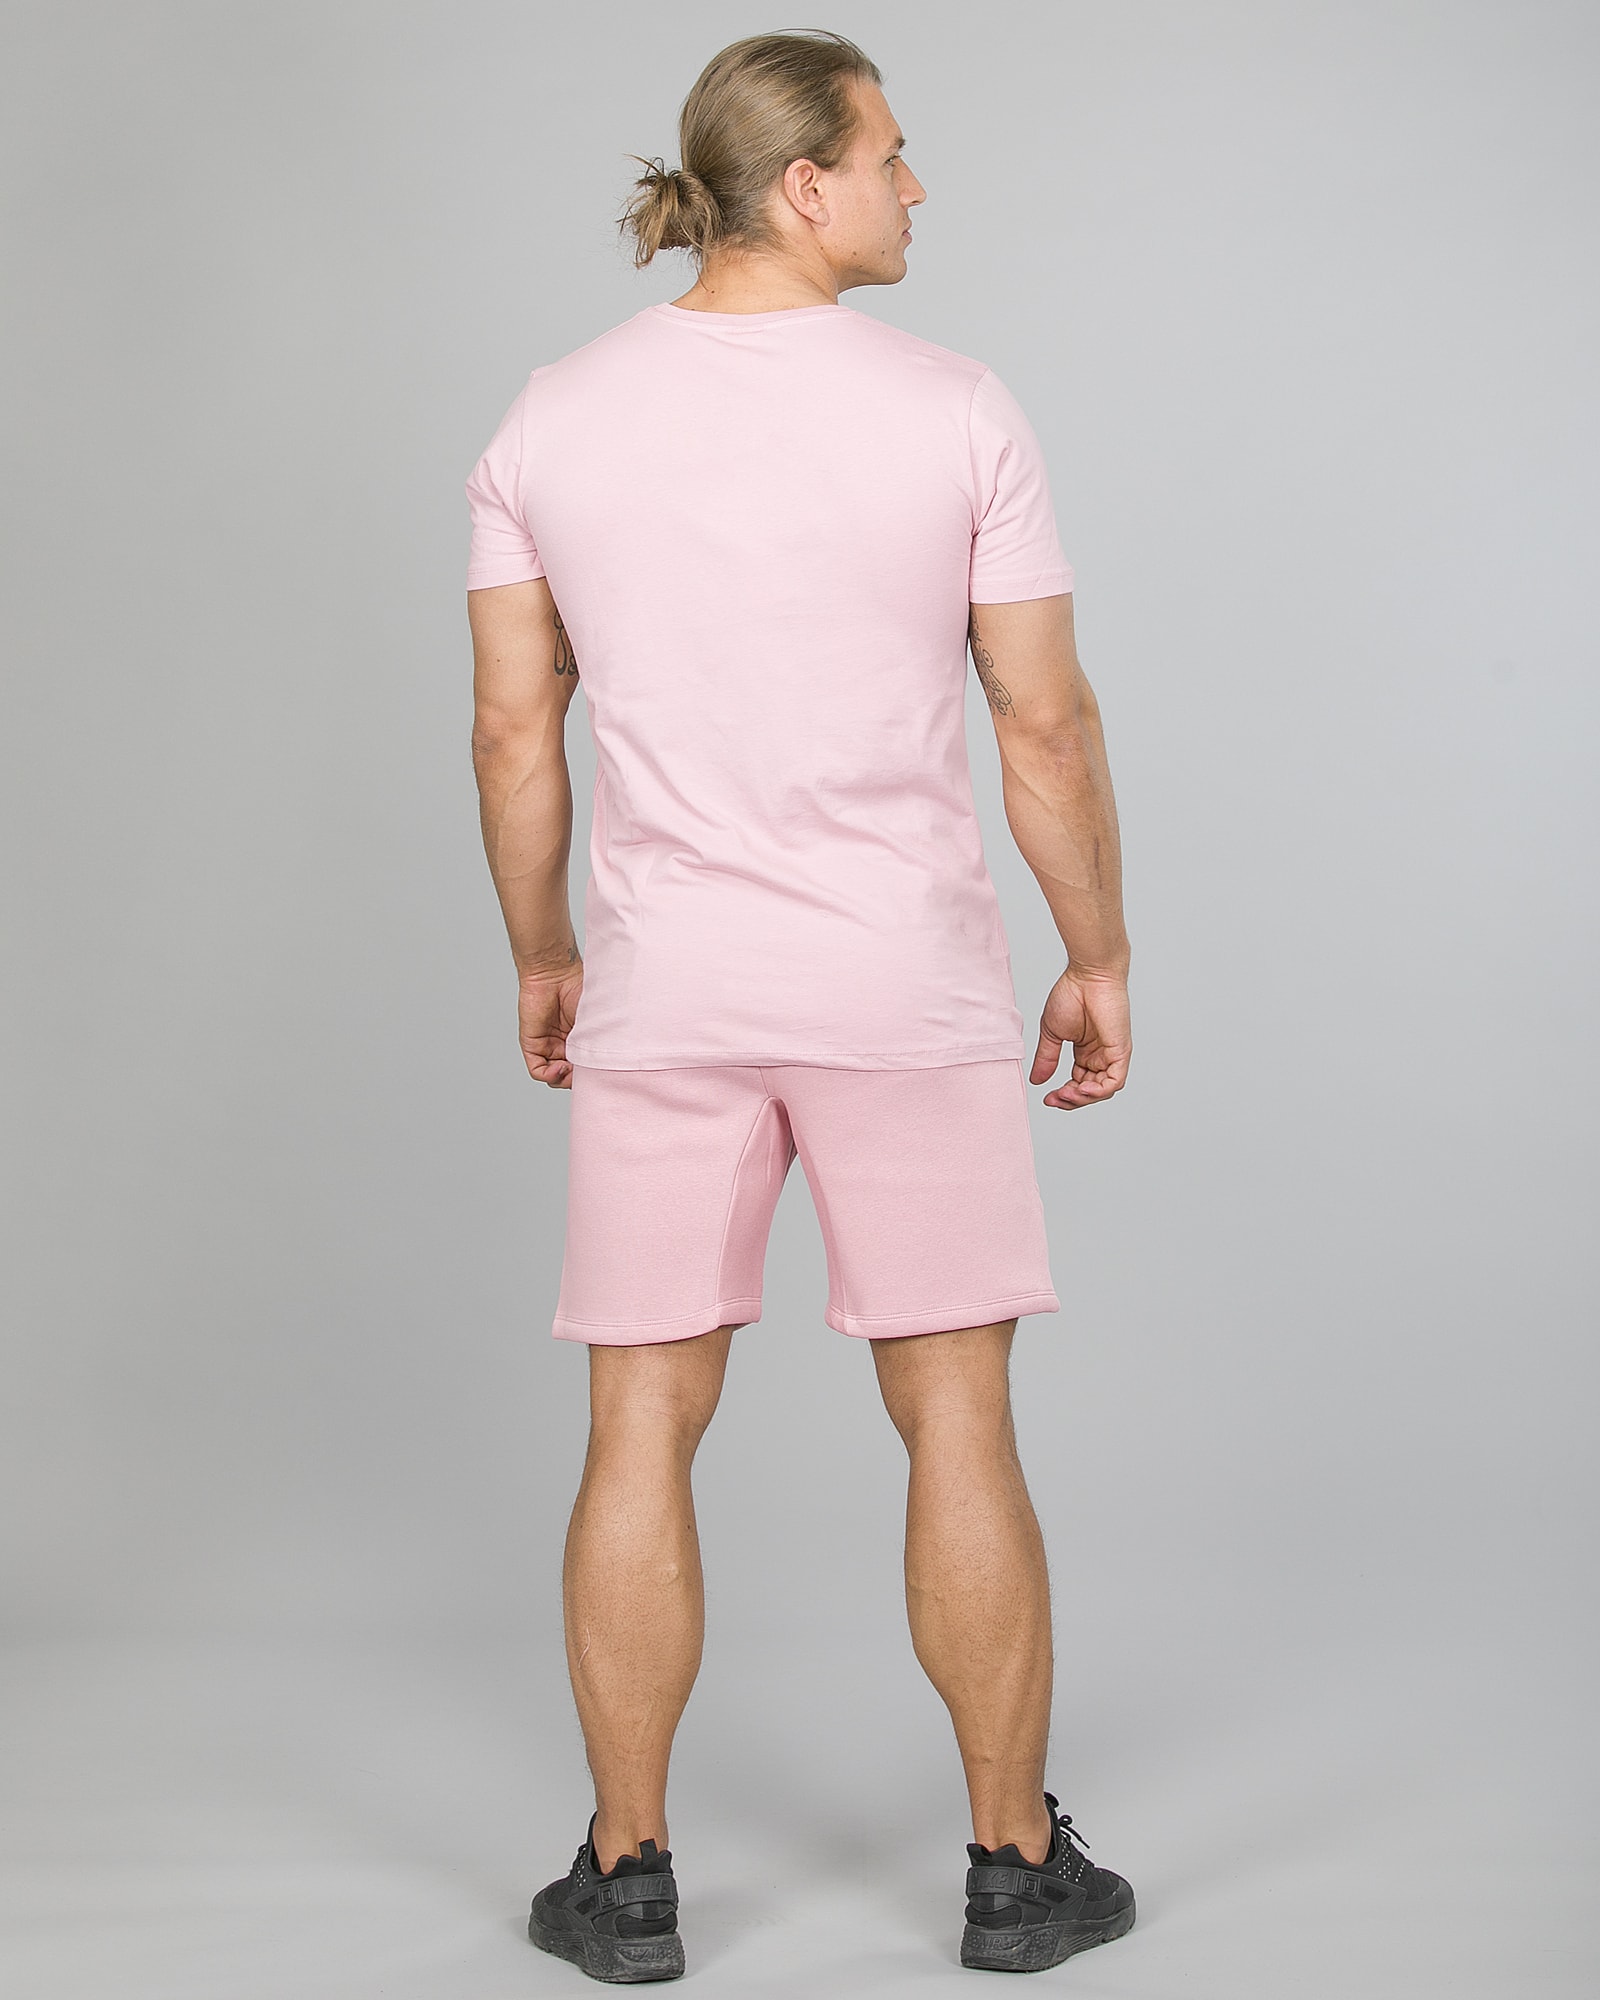 Hype Script T-Shirt Men ss18004 Pink and Crest Shorts ss18330 Pink e